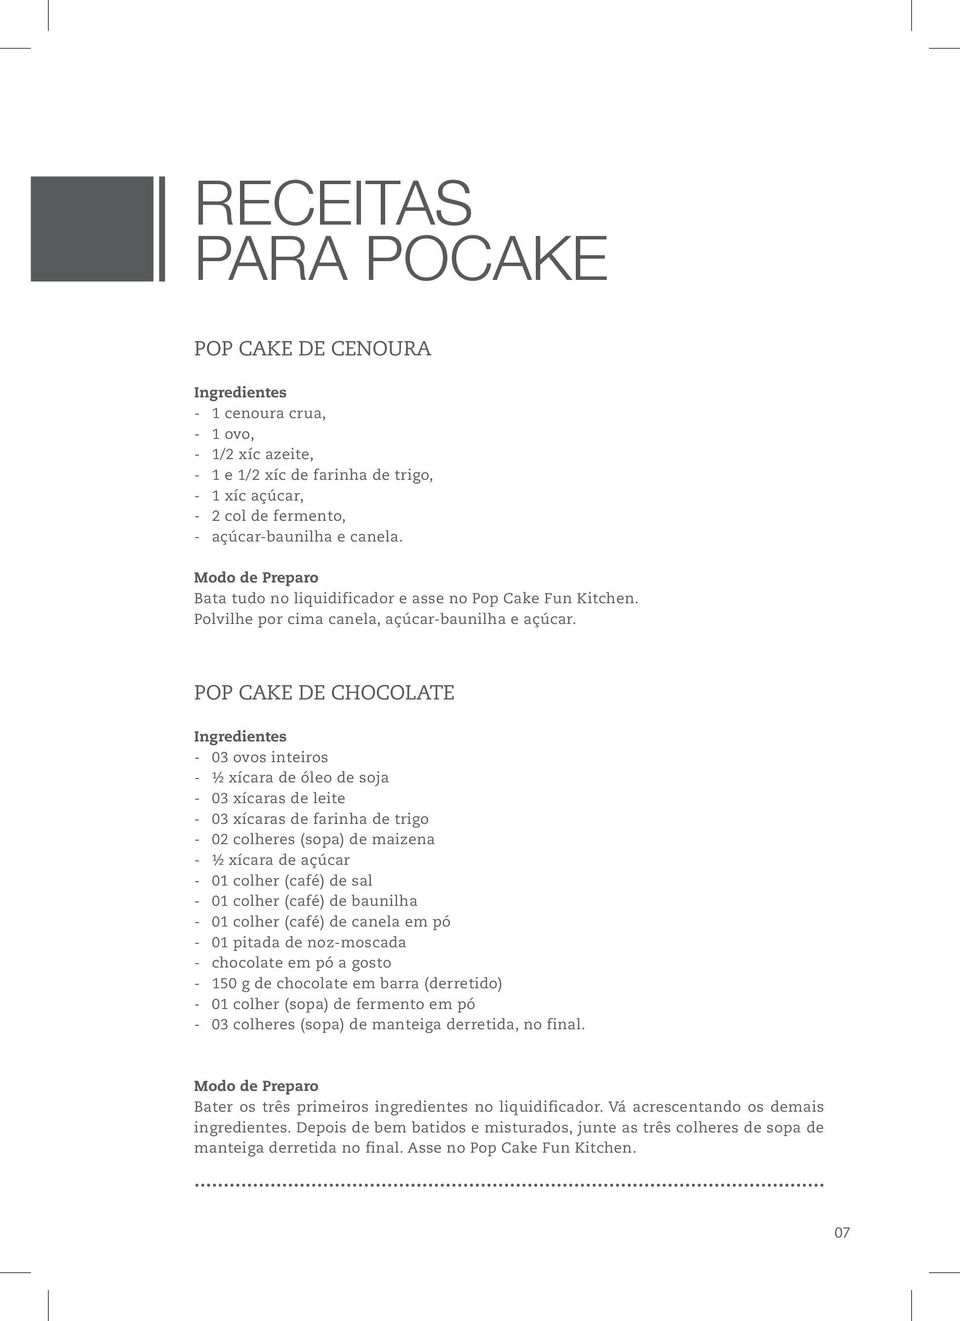 POP CAKE DE CHOCOLATE Ingredientes - 03 ovos inteiros - ½ xícara de óleo de soja - 03 xícaras de leite - 03 xícaras de farinha de trigo - 02 colheres (sopa) de maizena - ½ xícara de açúcar - 01